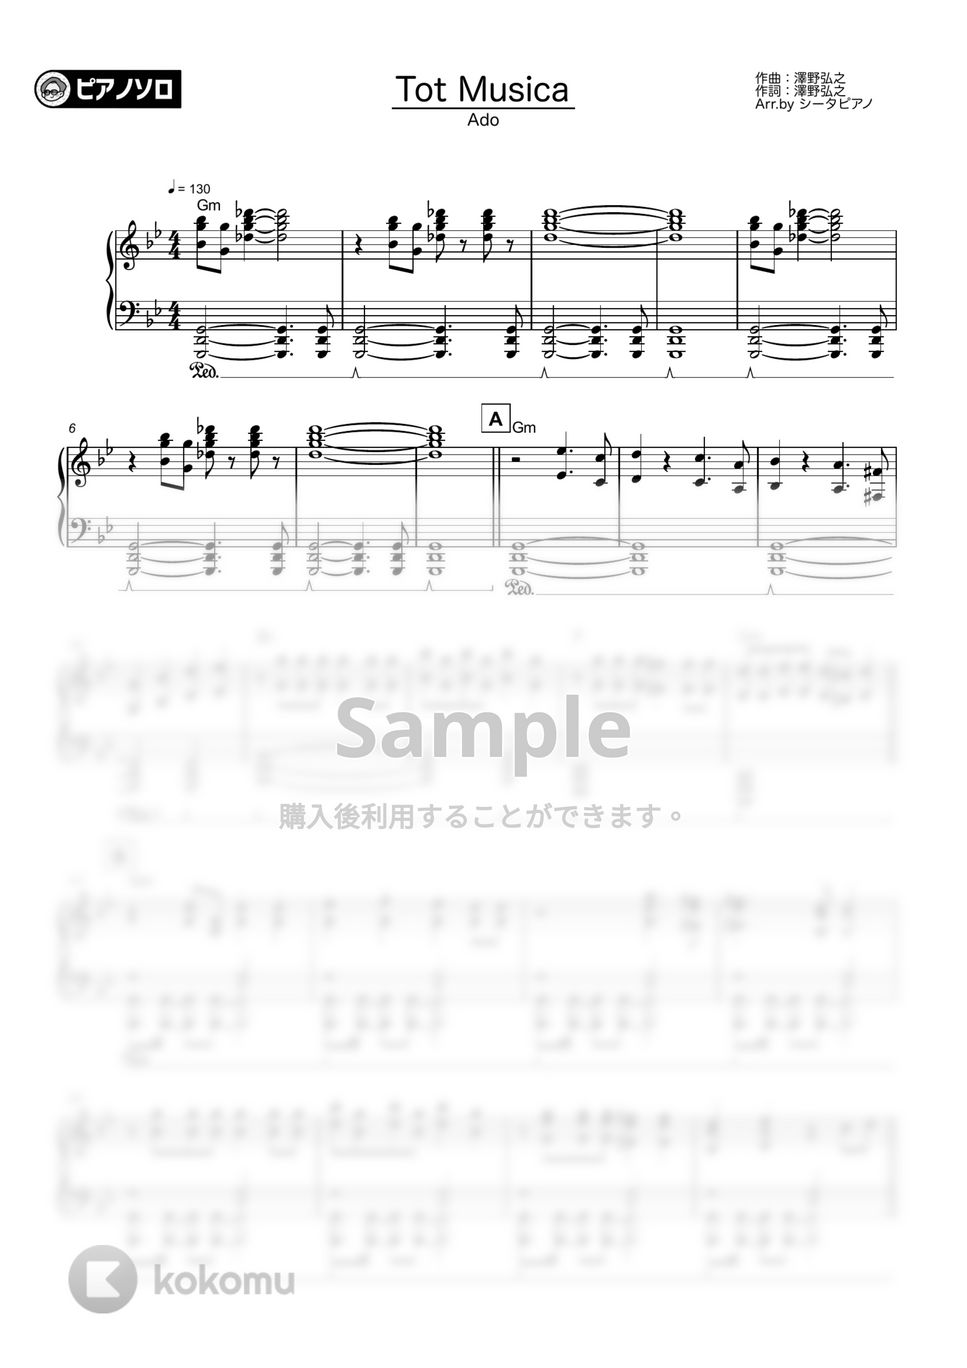 Ado - Tot Musica by シータピアノ